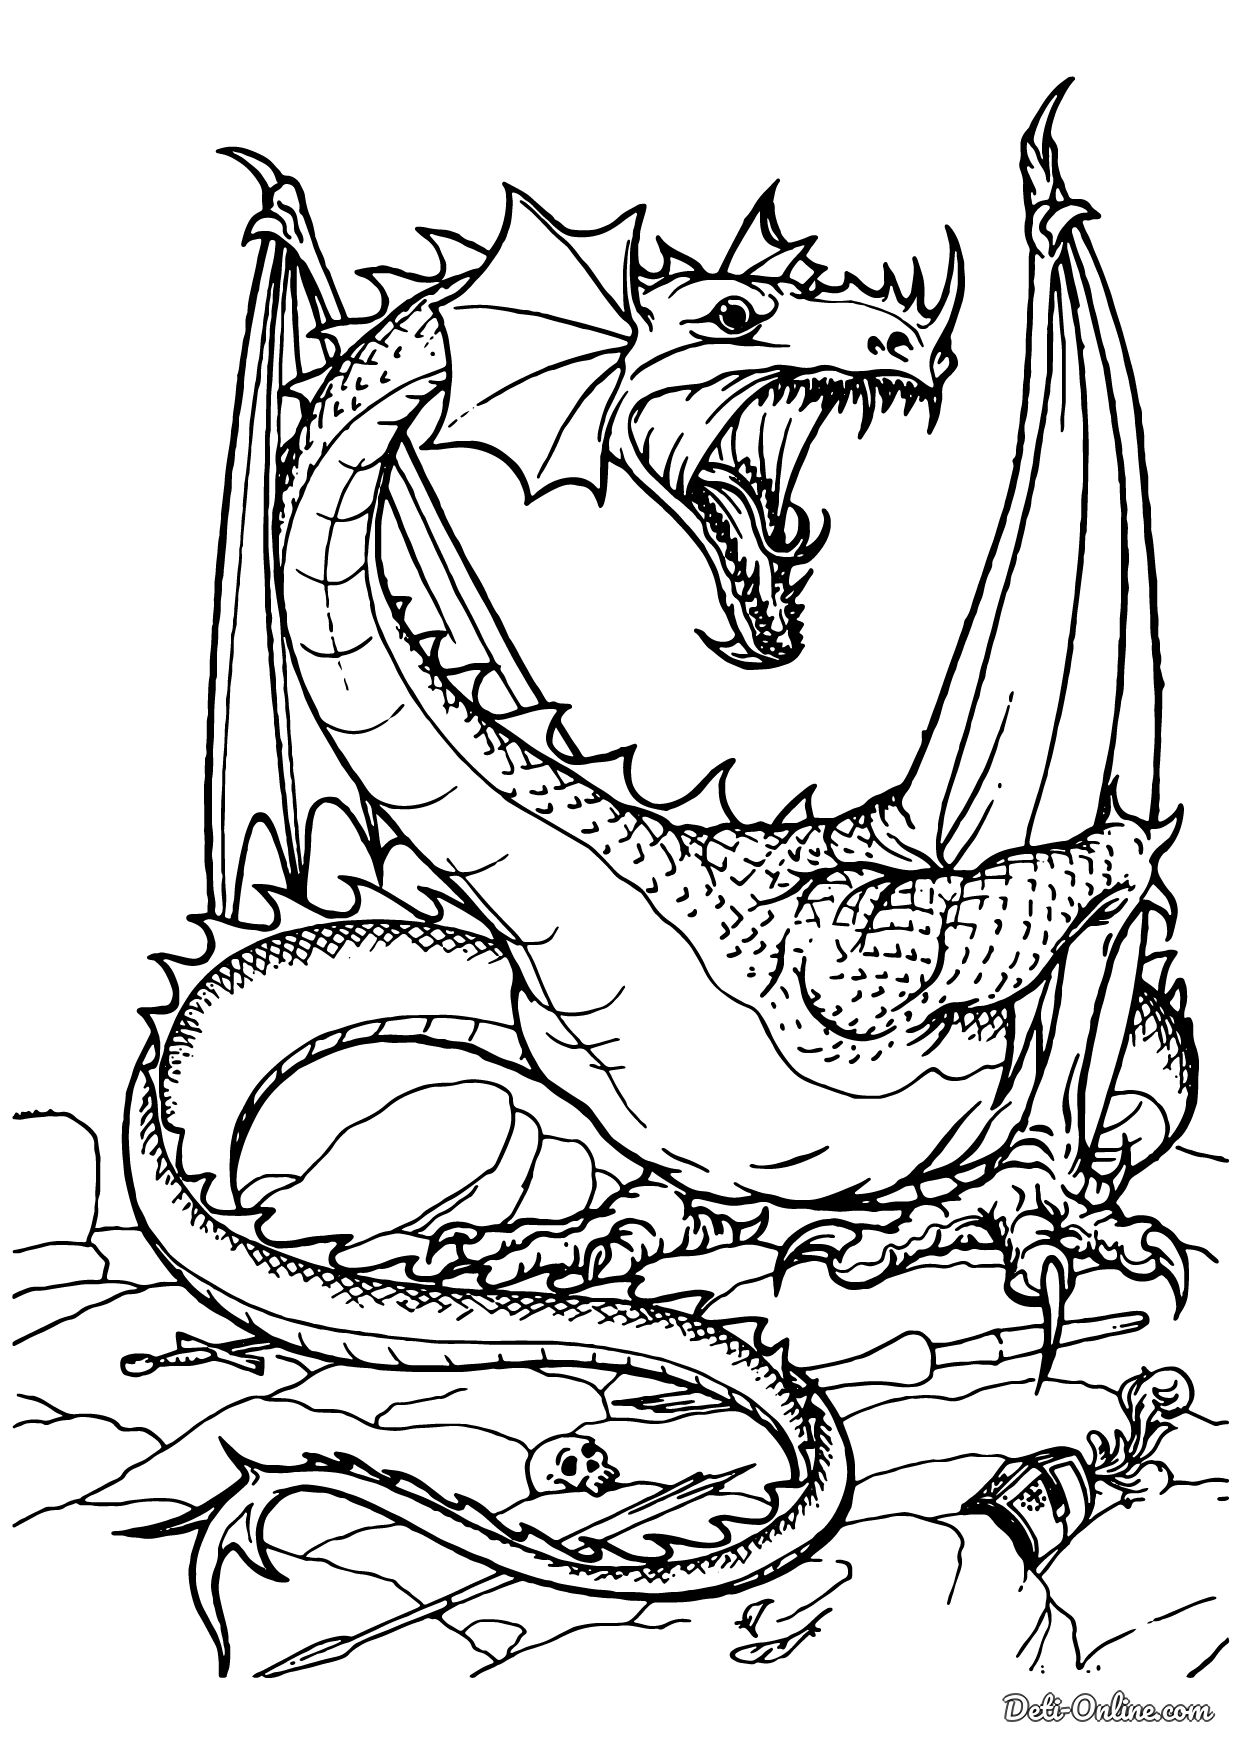 Бесплатные раскраски с драконами